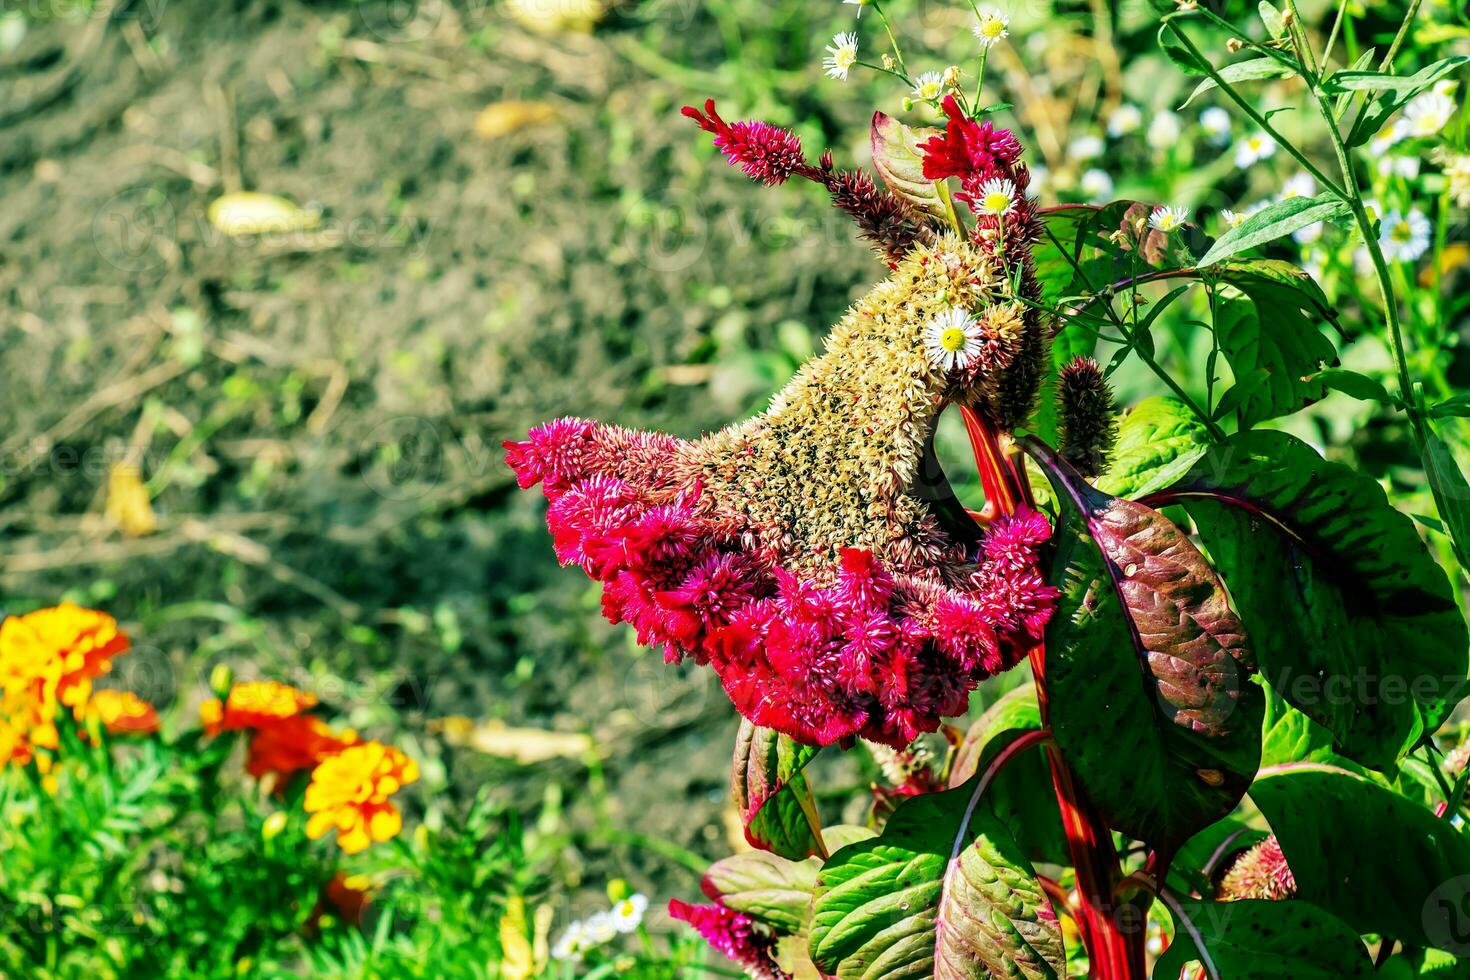 kuif- hanekam bloem, wetenschappelijk bekend net zo celosia argentea cristata hebben gelijkenis naar een haan kam, met levendig, kuif, en gegolfd bloei dat komen in een reeks van kleuren Purper. foto